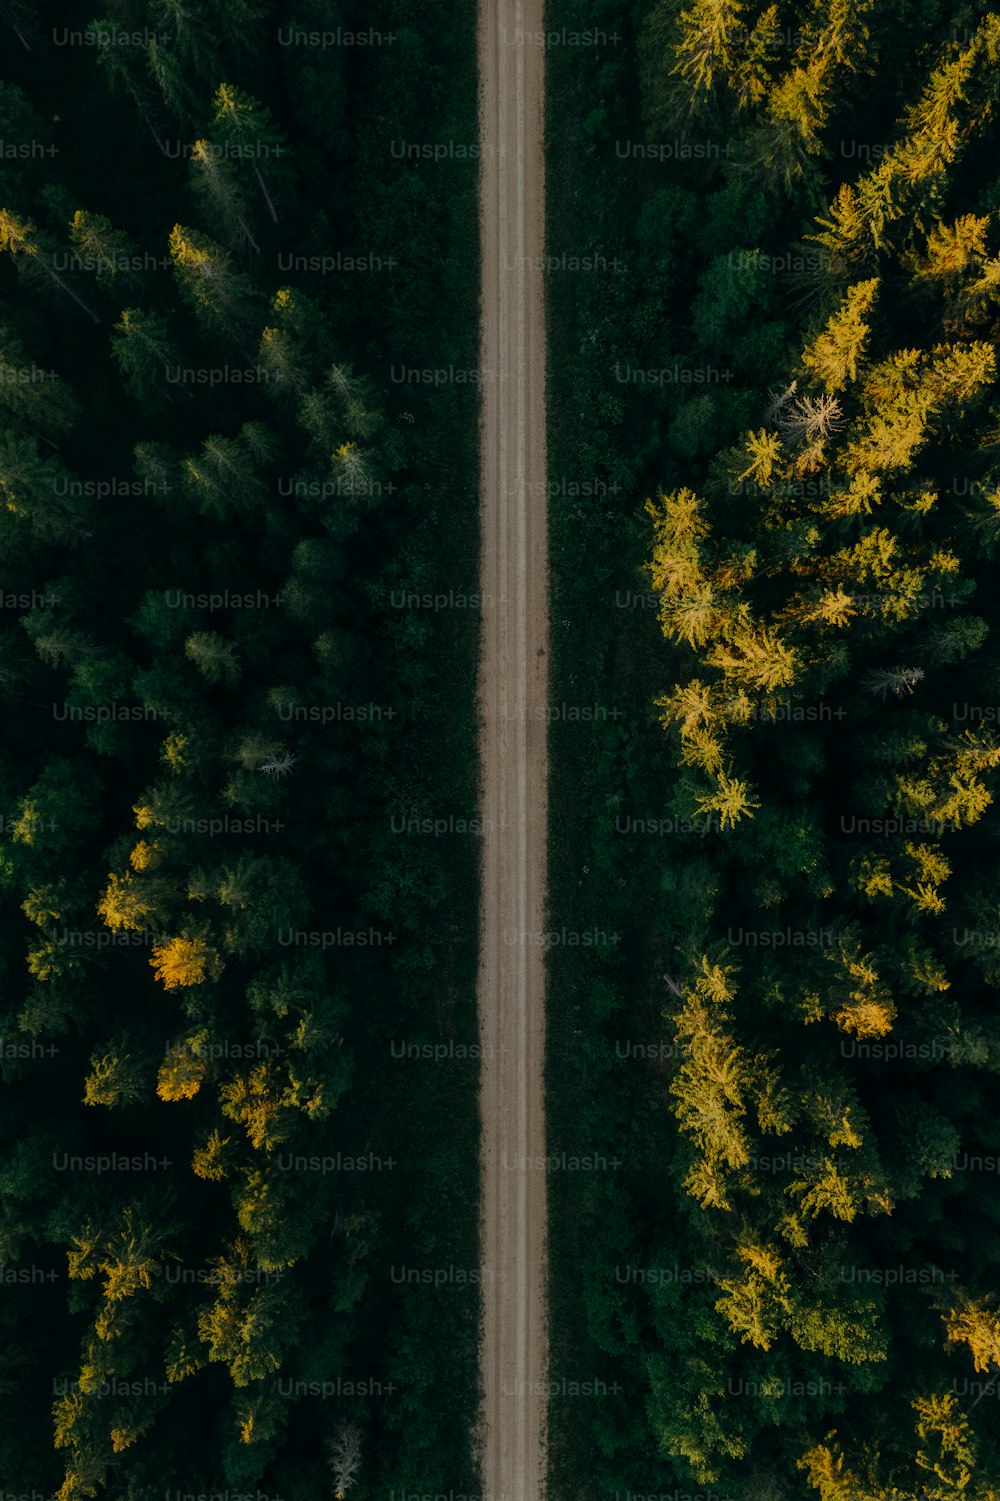 木々に囲まれた道路の空中写真